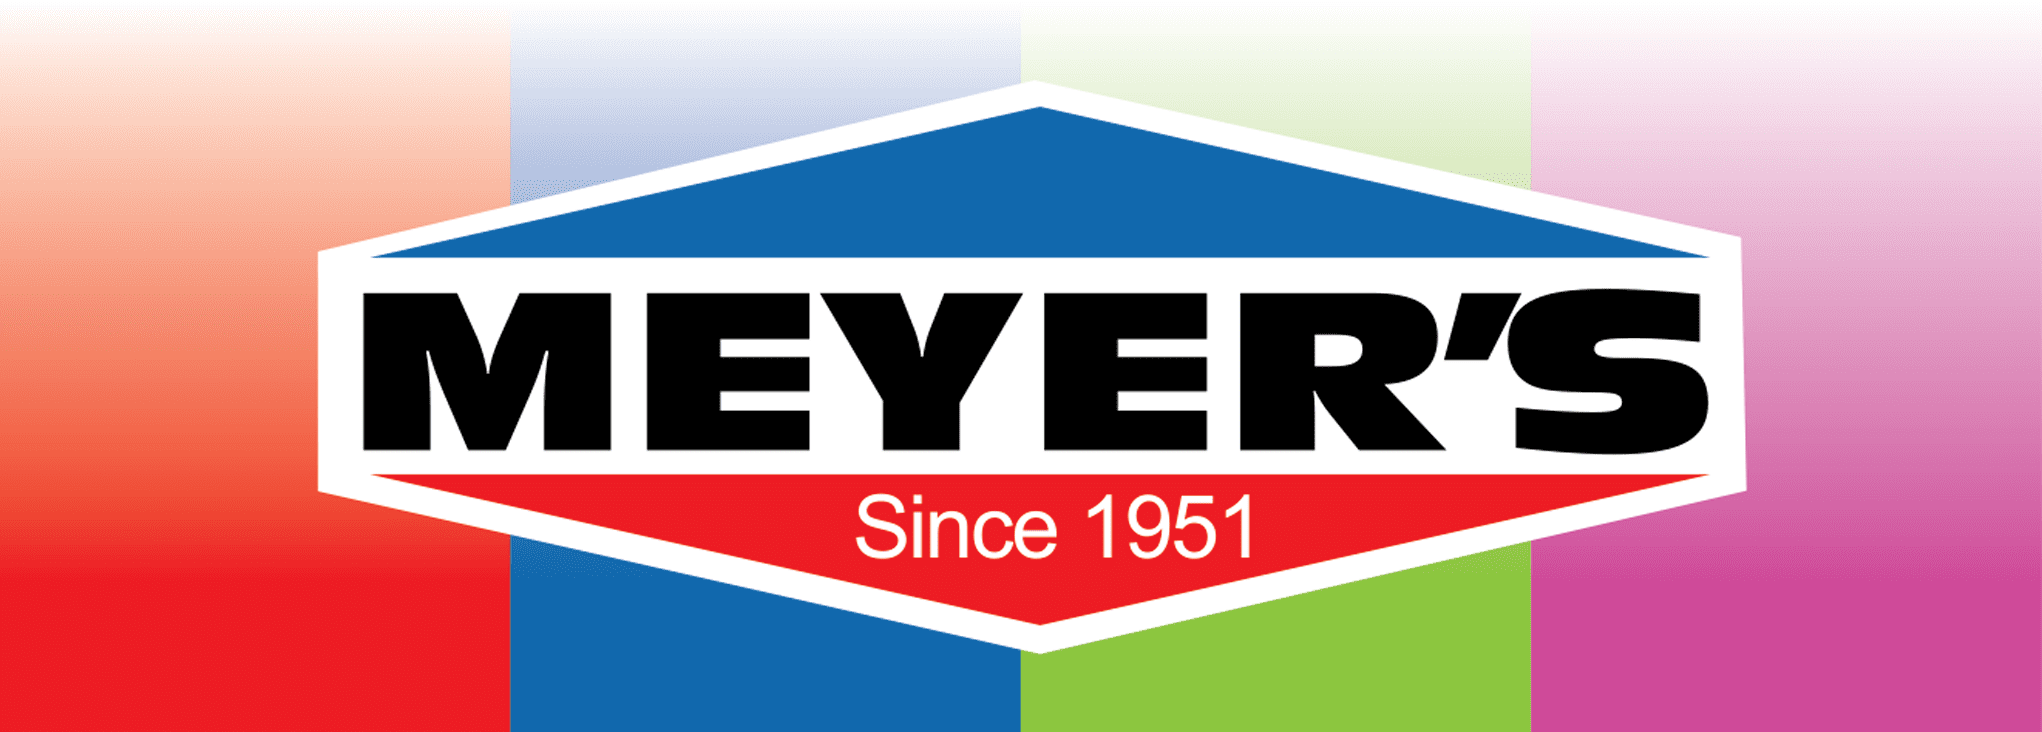 Meyers Companies, Inc.